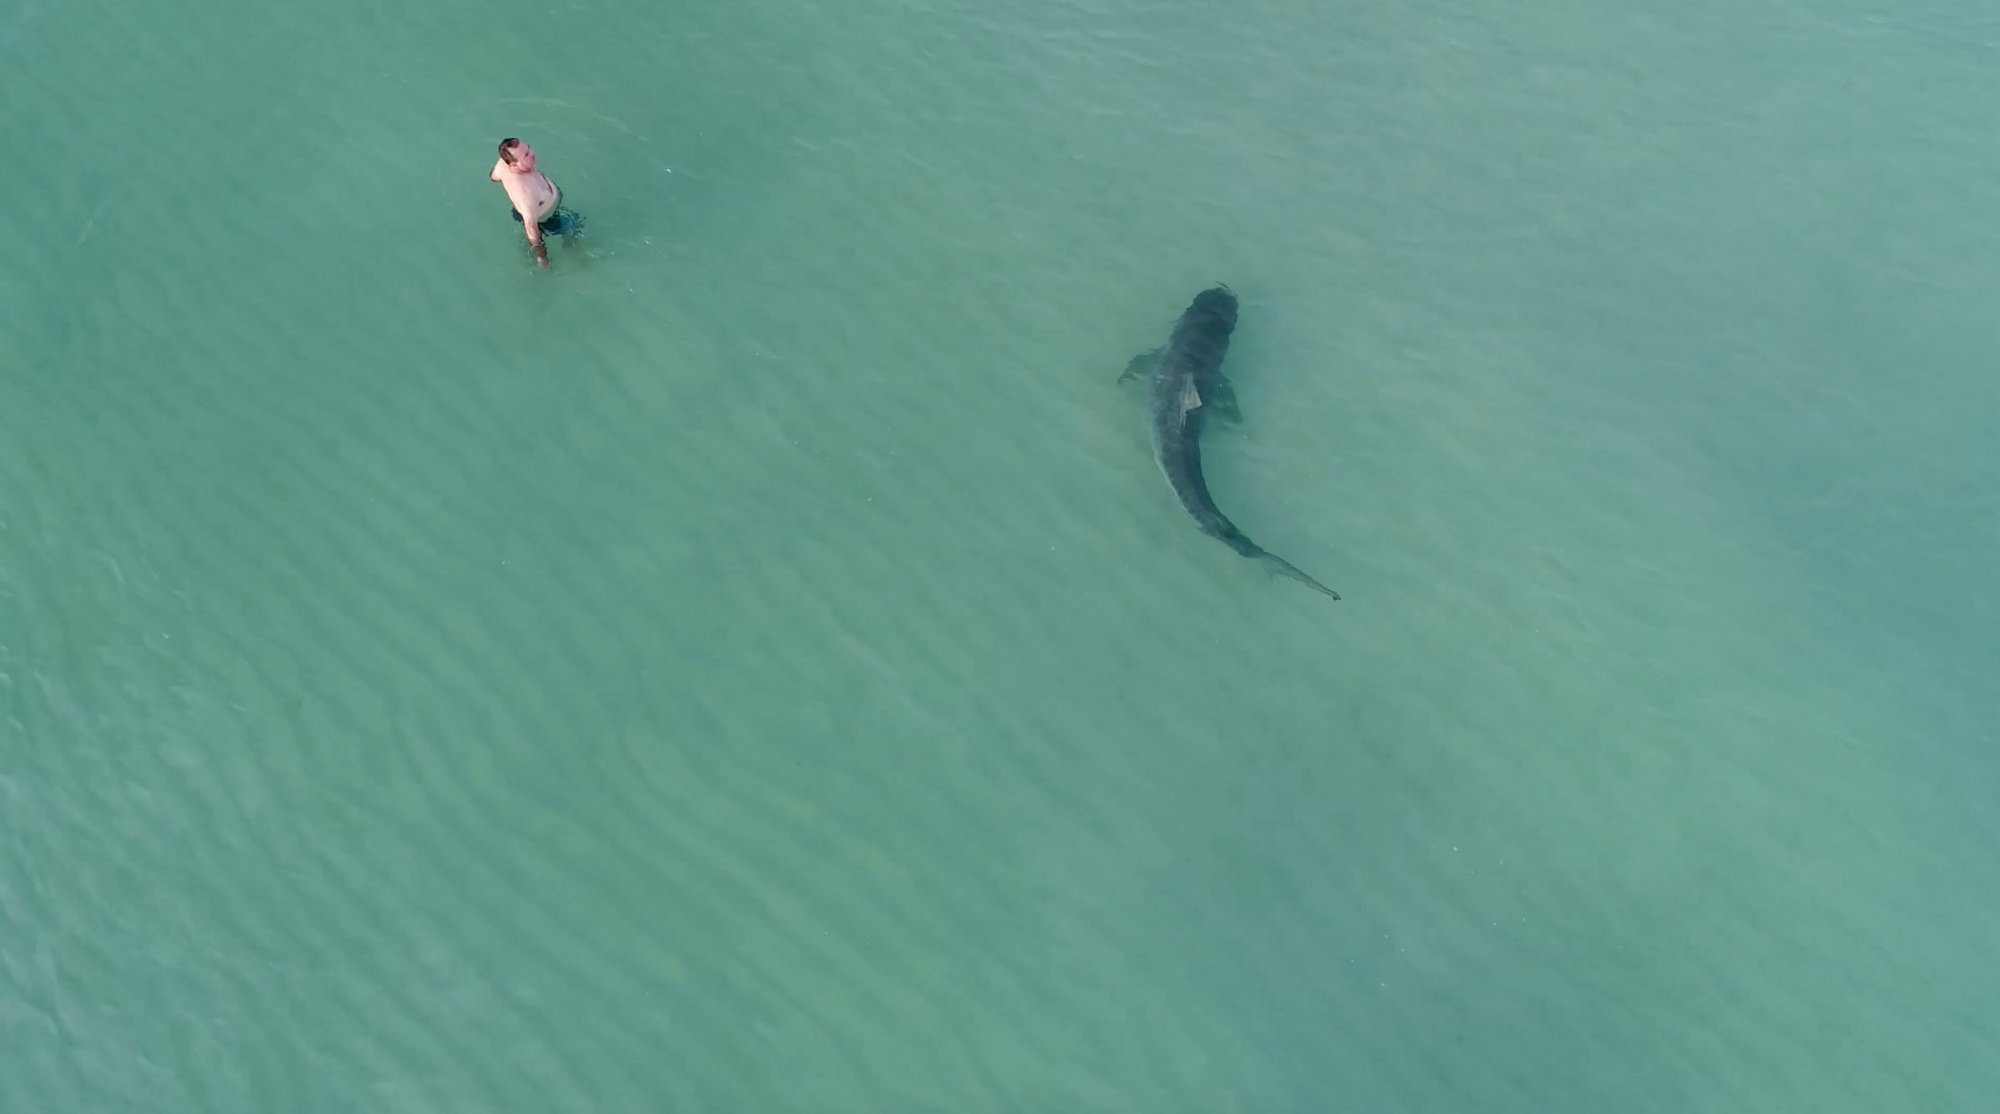 ΗΠΑ: Ειδικοί διερευνούν την επίθεση καρχαρία σε κολυμβητή κοντά στο Σαν Ντιέγκο